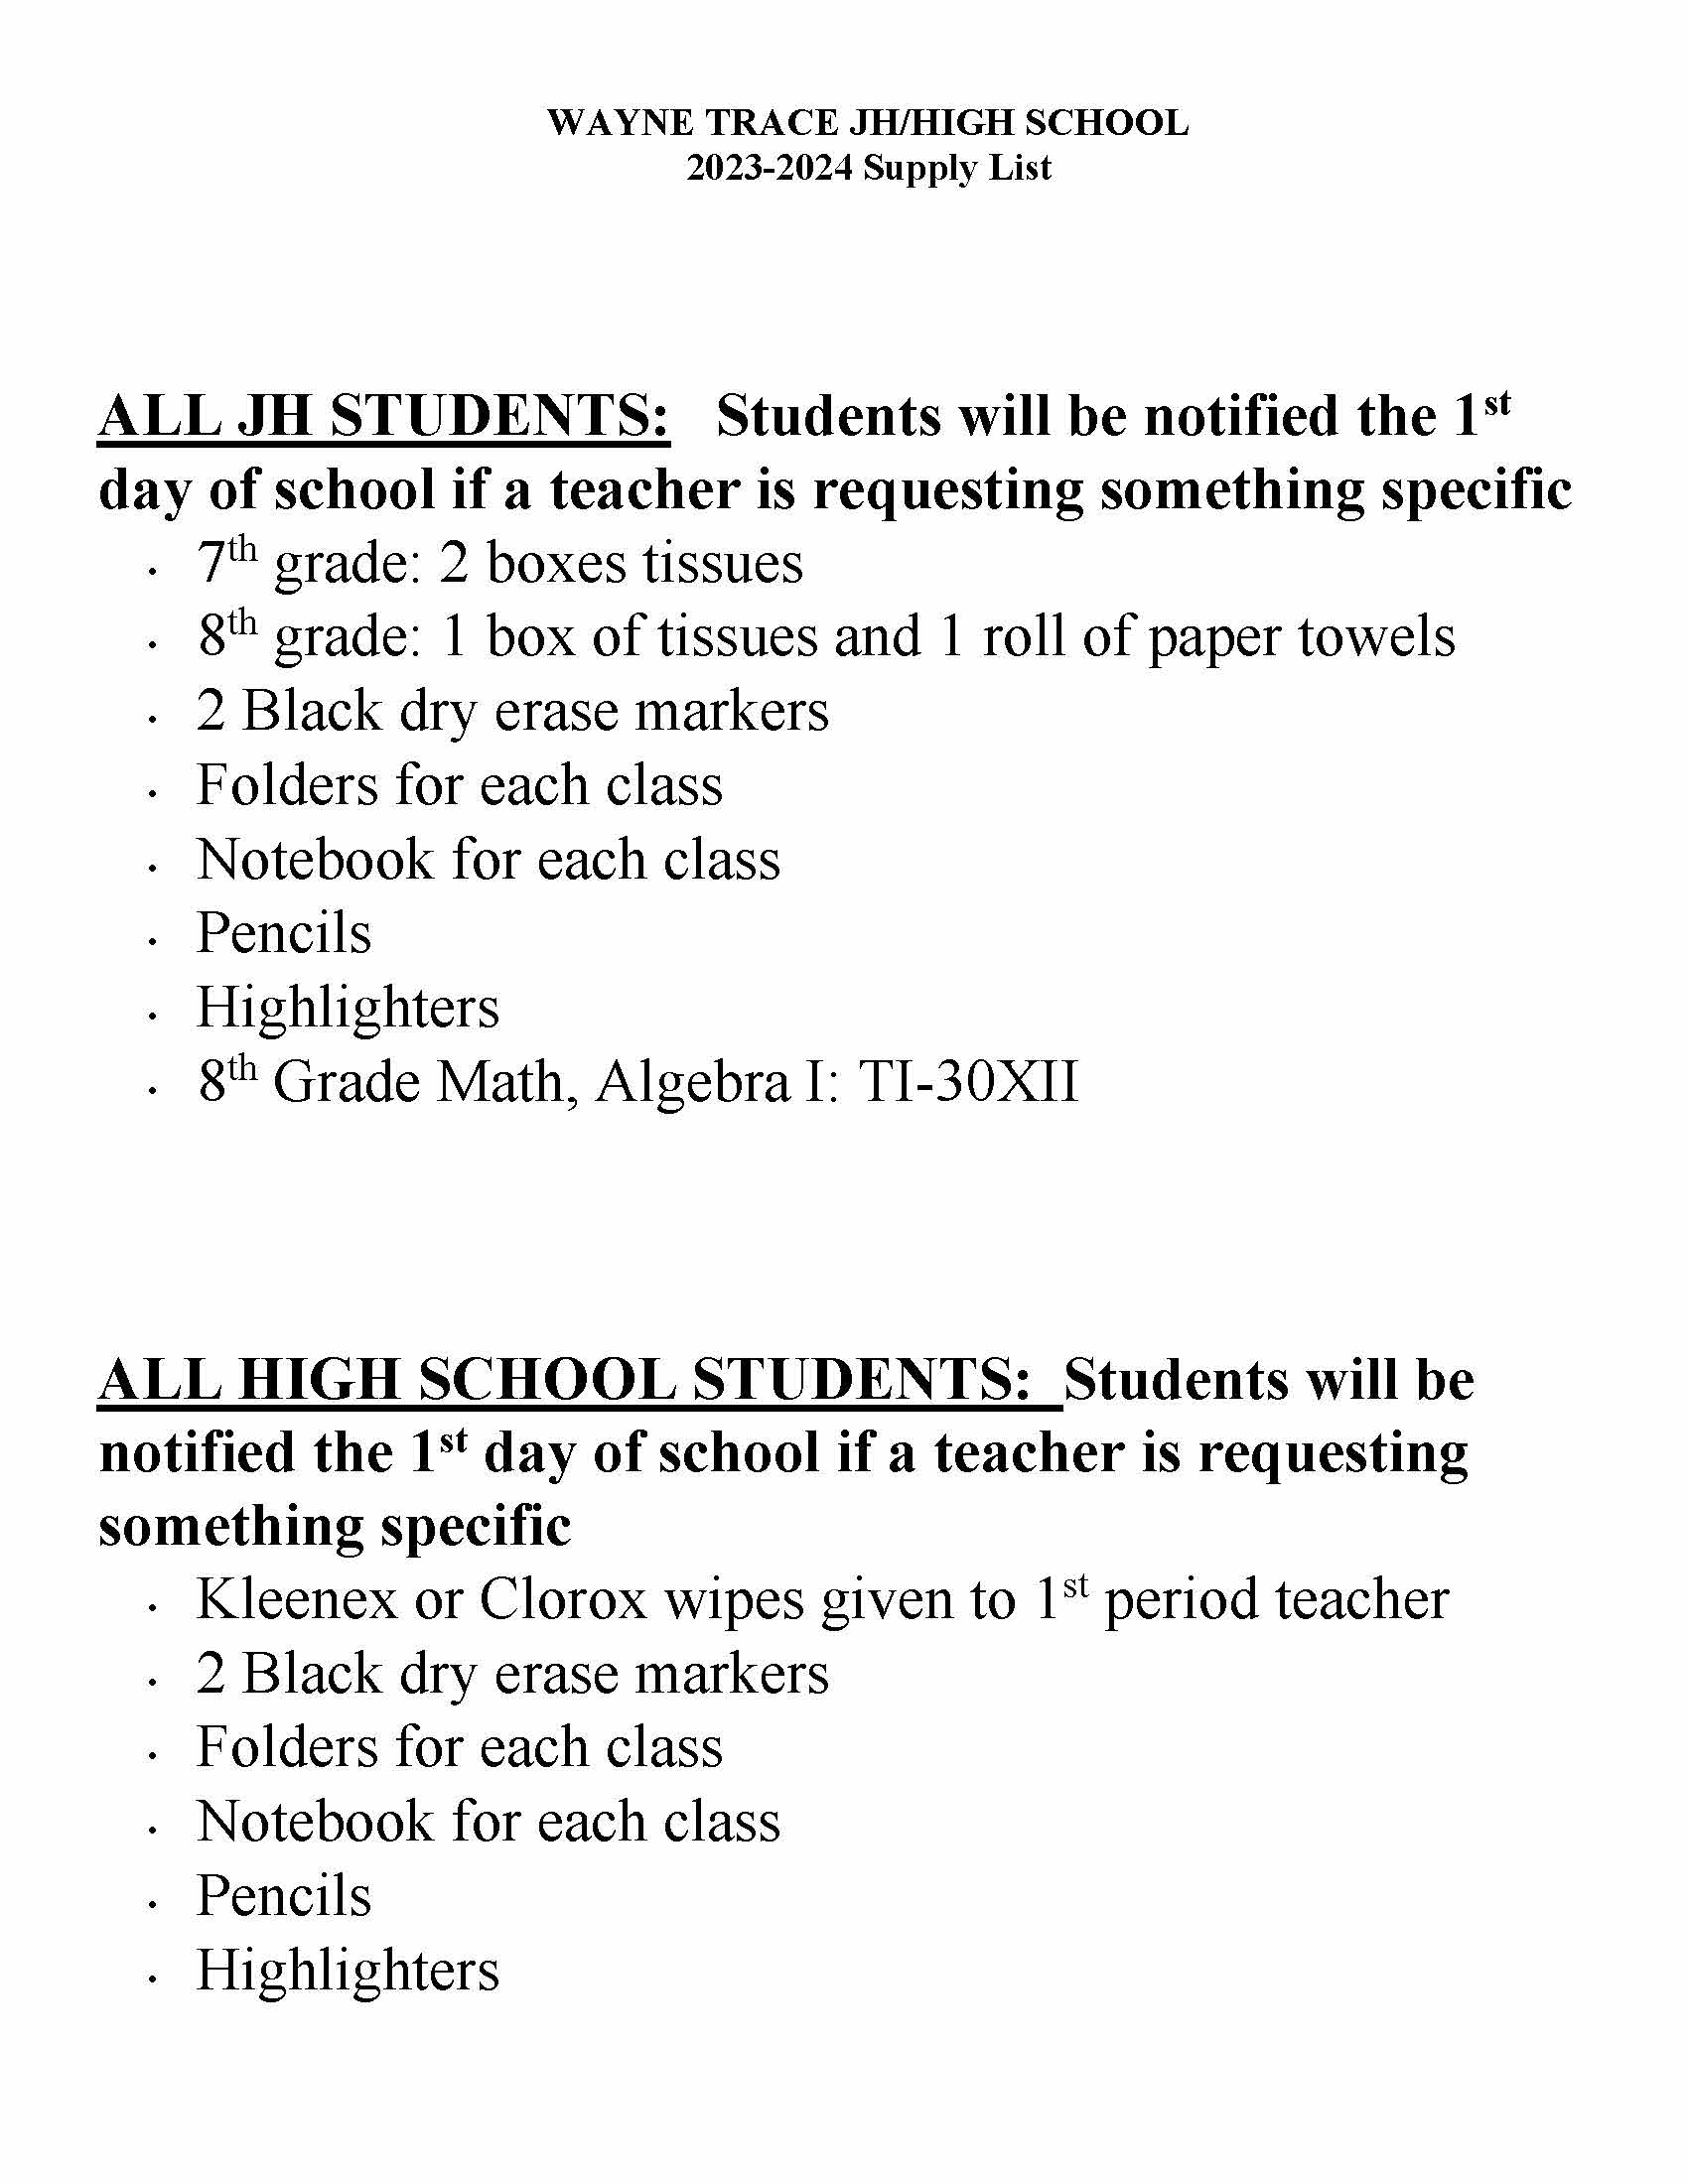 High School Supply List - High School